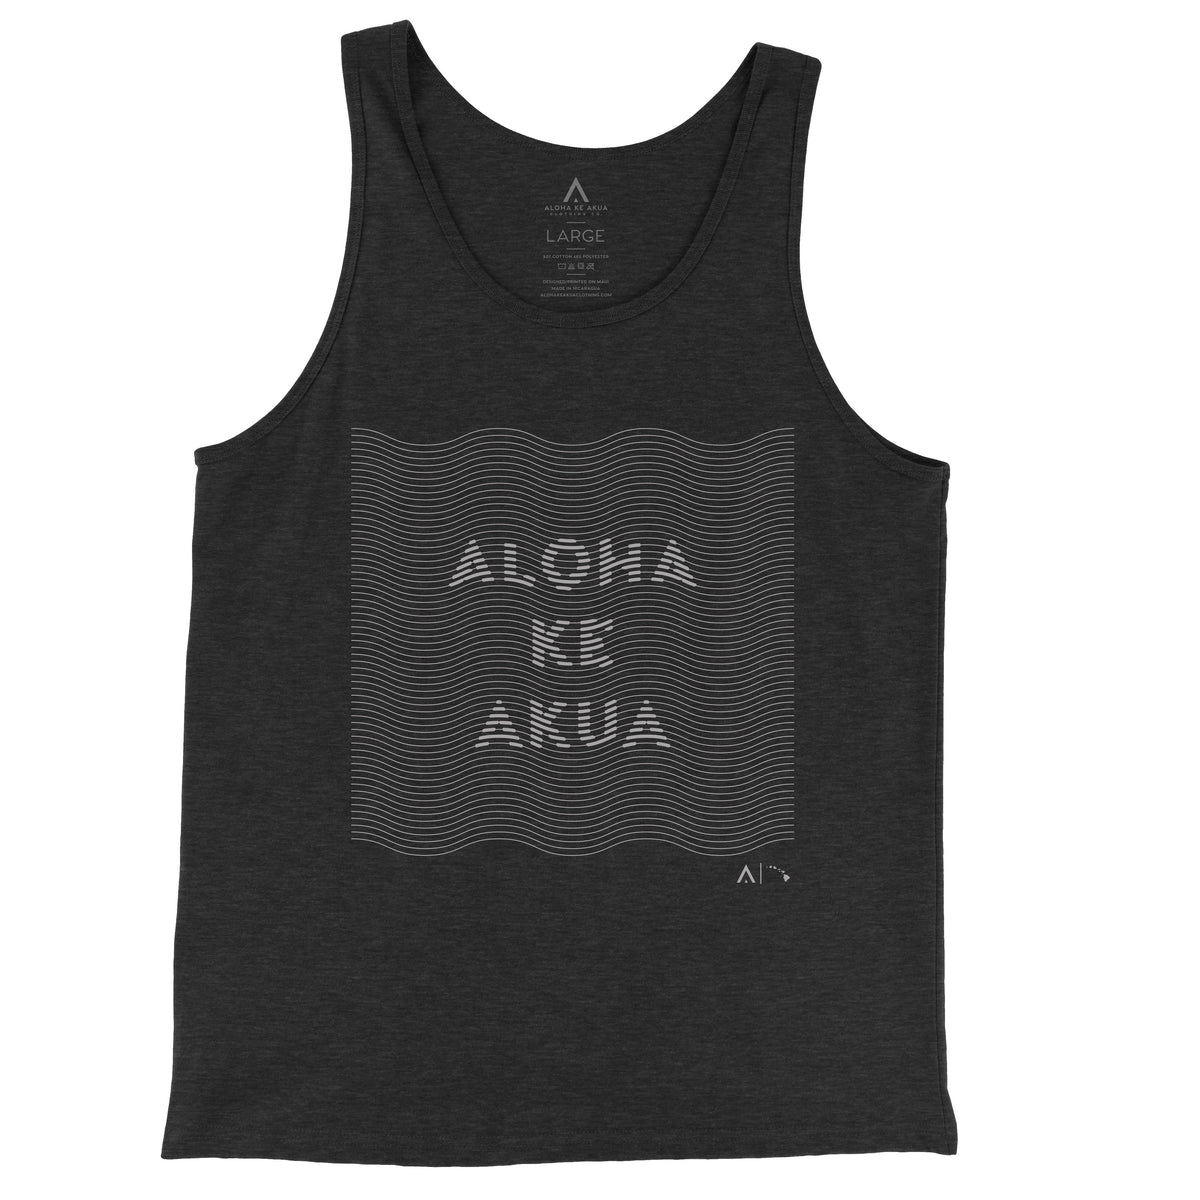 Pop-Up Mākeke - Aloha Ke Akua Clothing - Kainalu Men&#39;s Tank Top - Black Heather